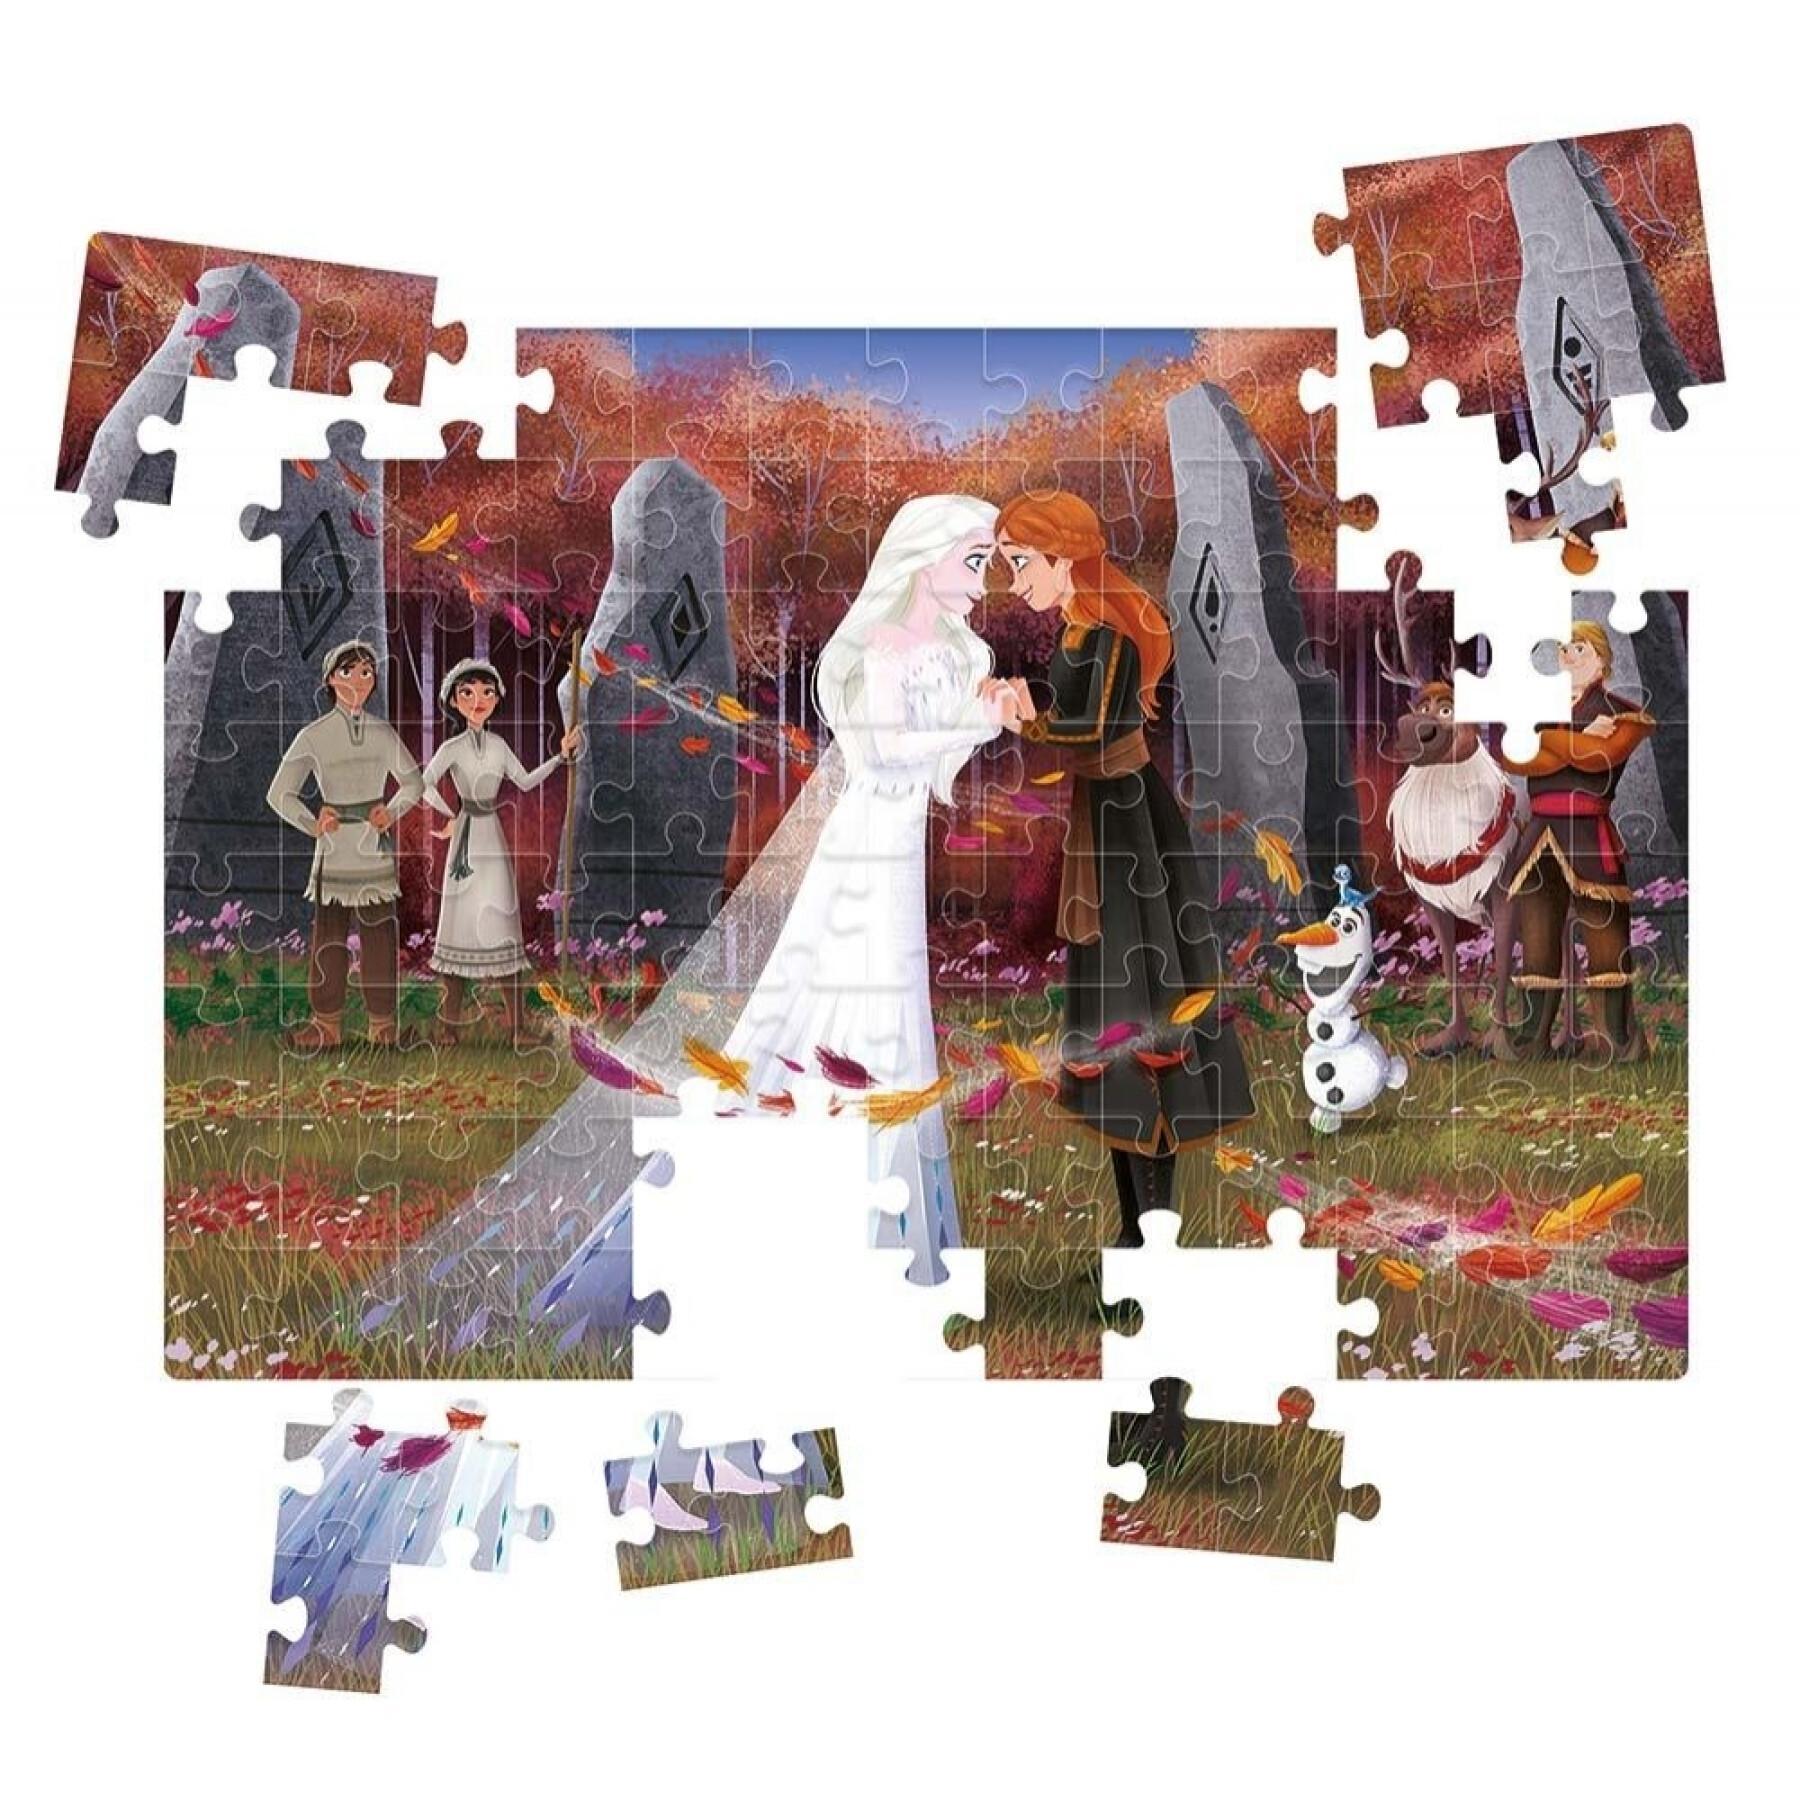 Puzzle de 104 piezas Frozen II